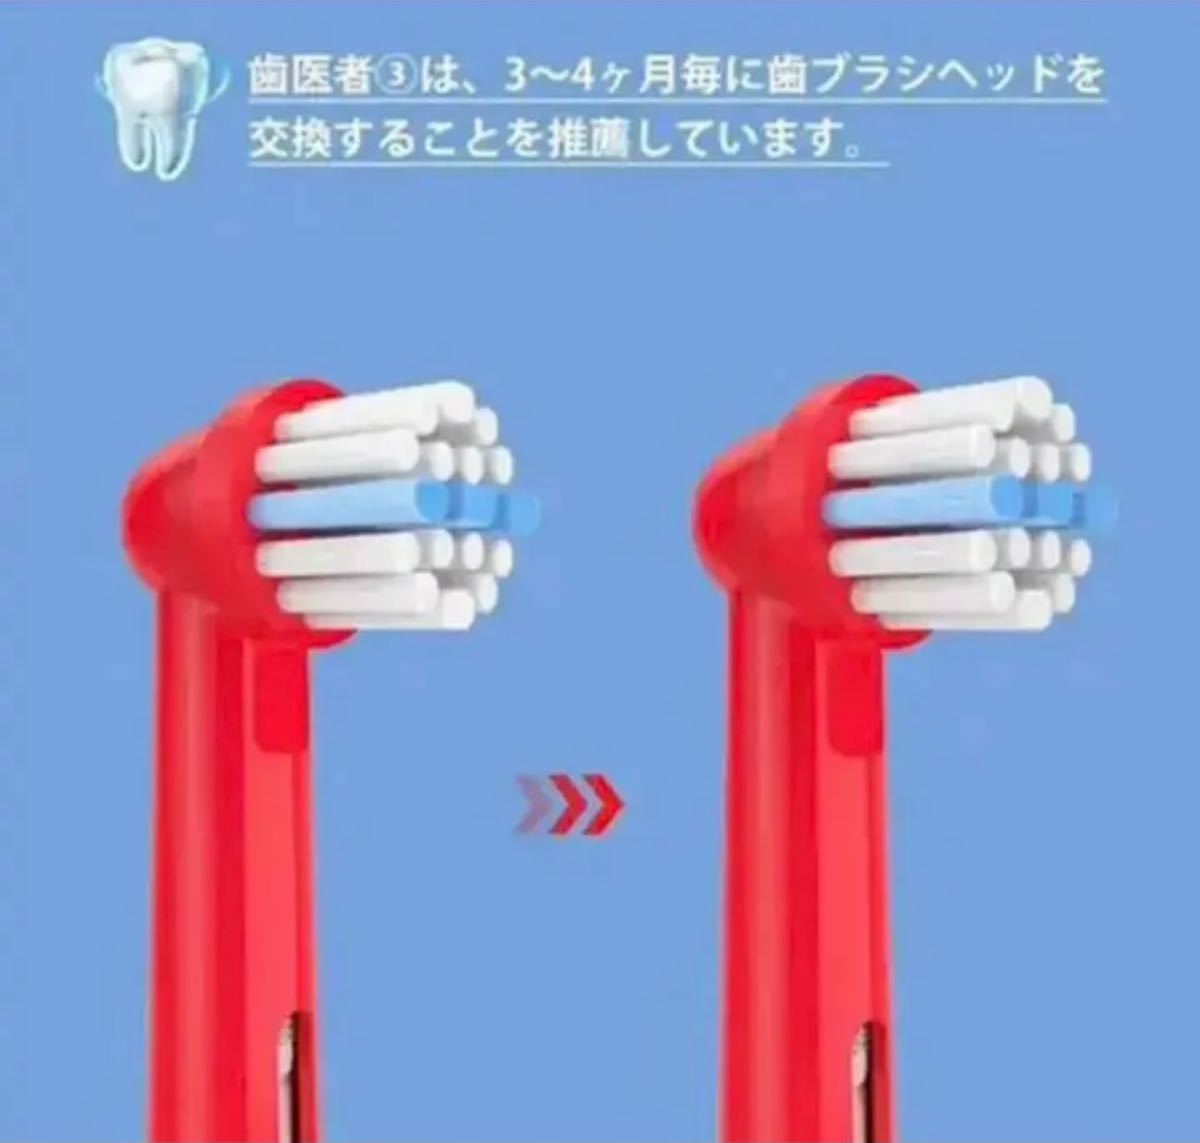 ブラウン オーラルB 対応 替えブラシ 電動歯ブラシ 互換ブラシ 子供用